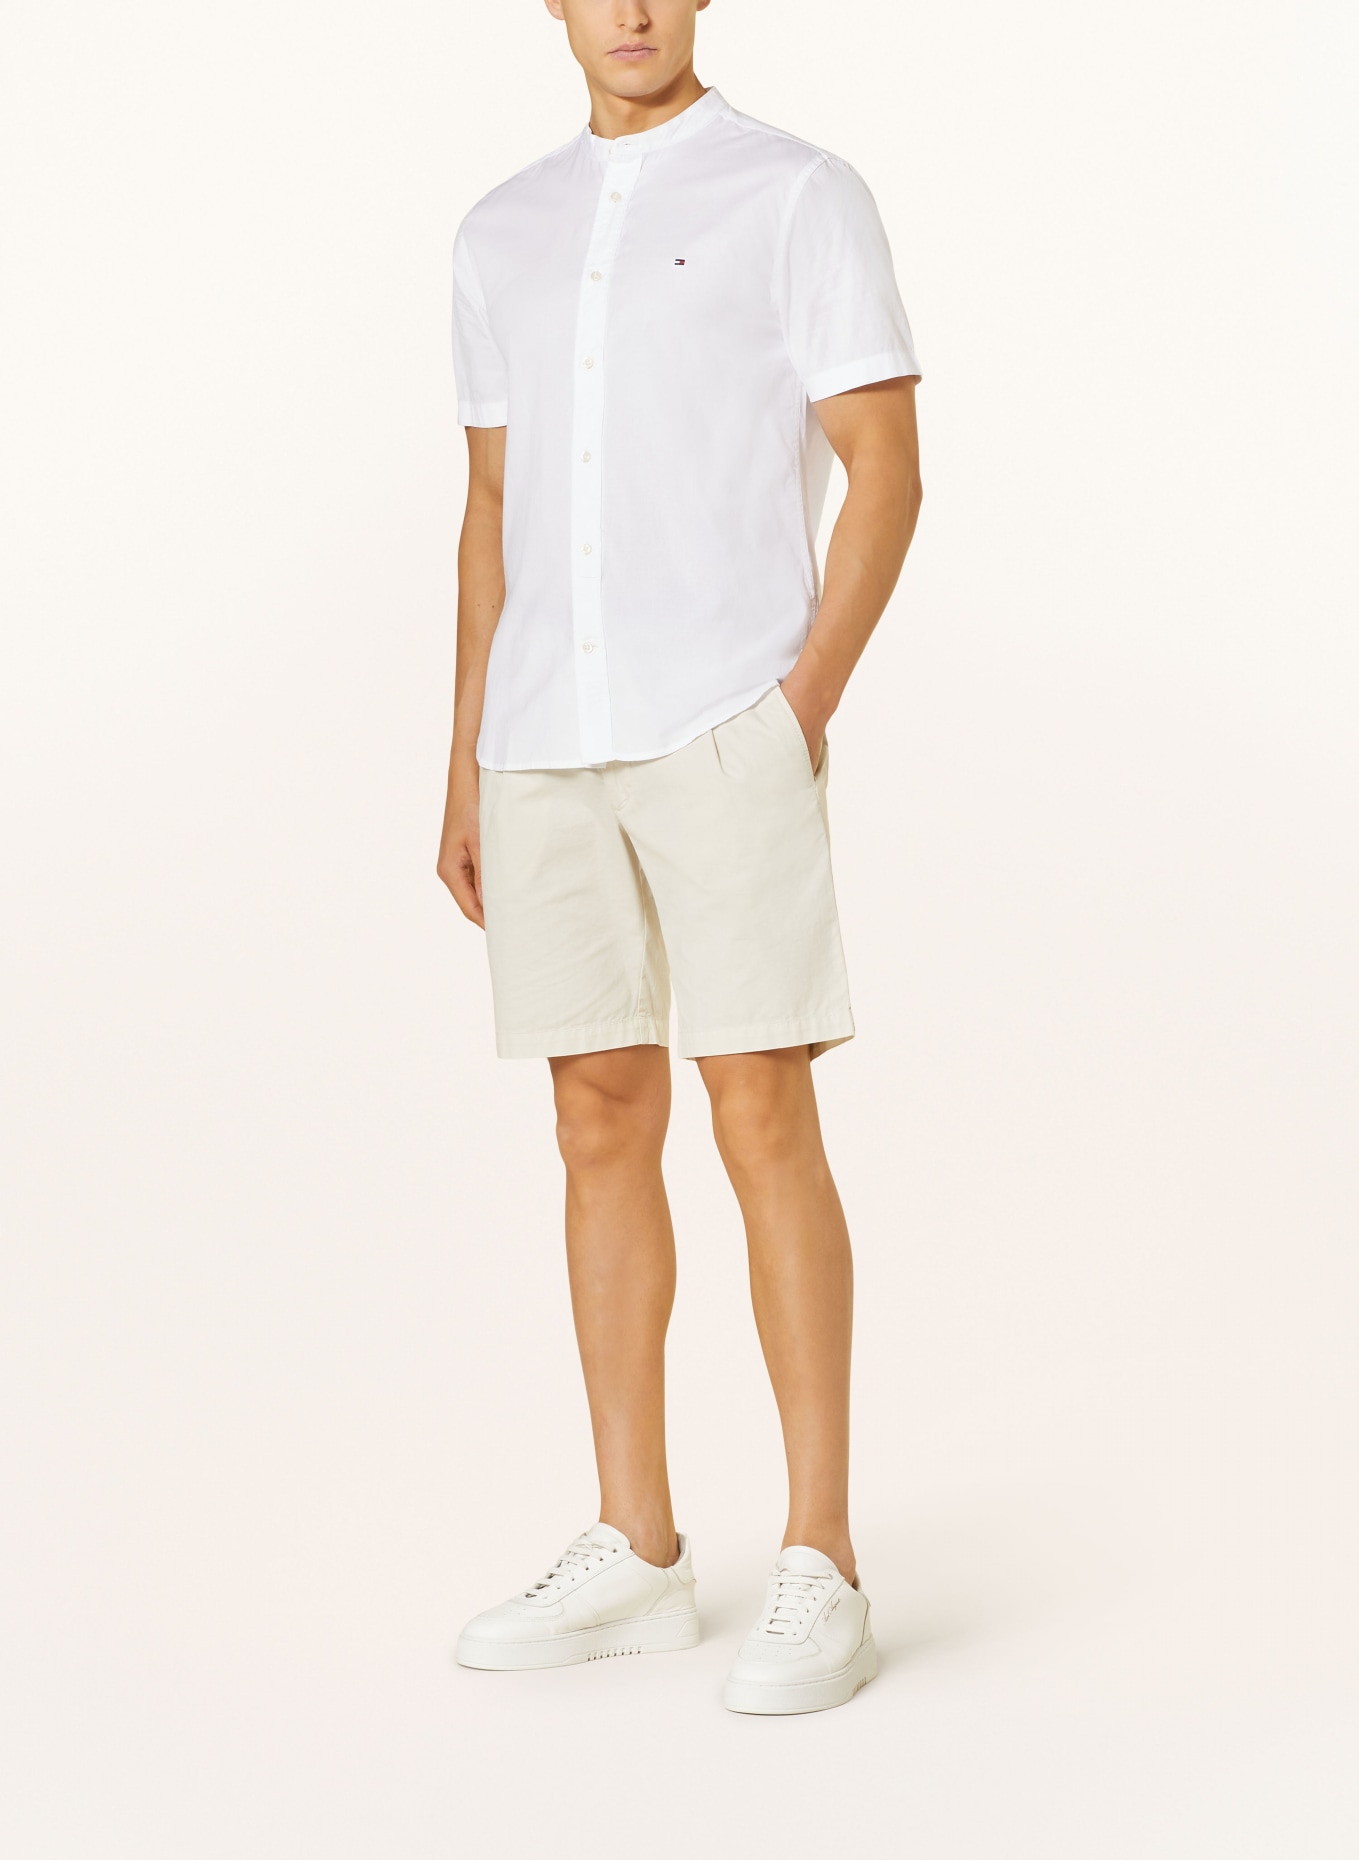 TOMMY HILFIGER Short sleeve shirt comfort fit, Color: WHITE (Image 2)